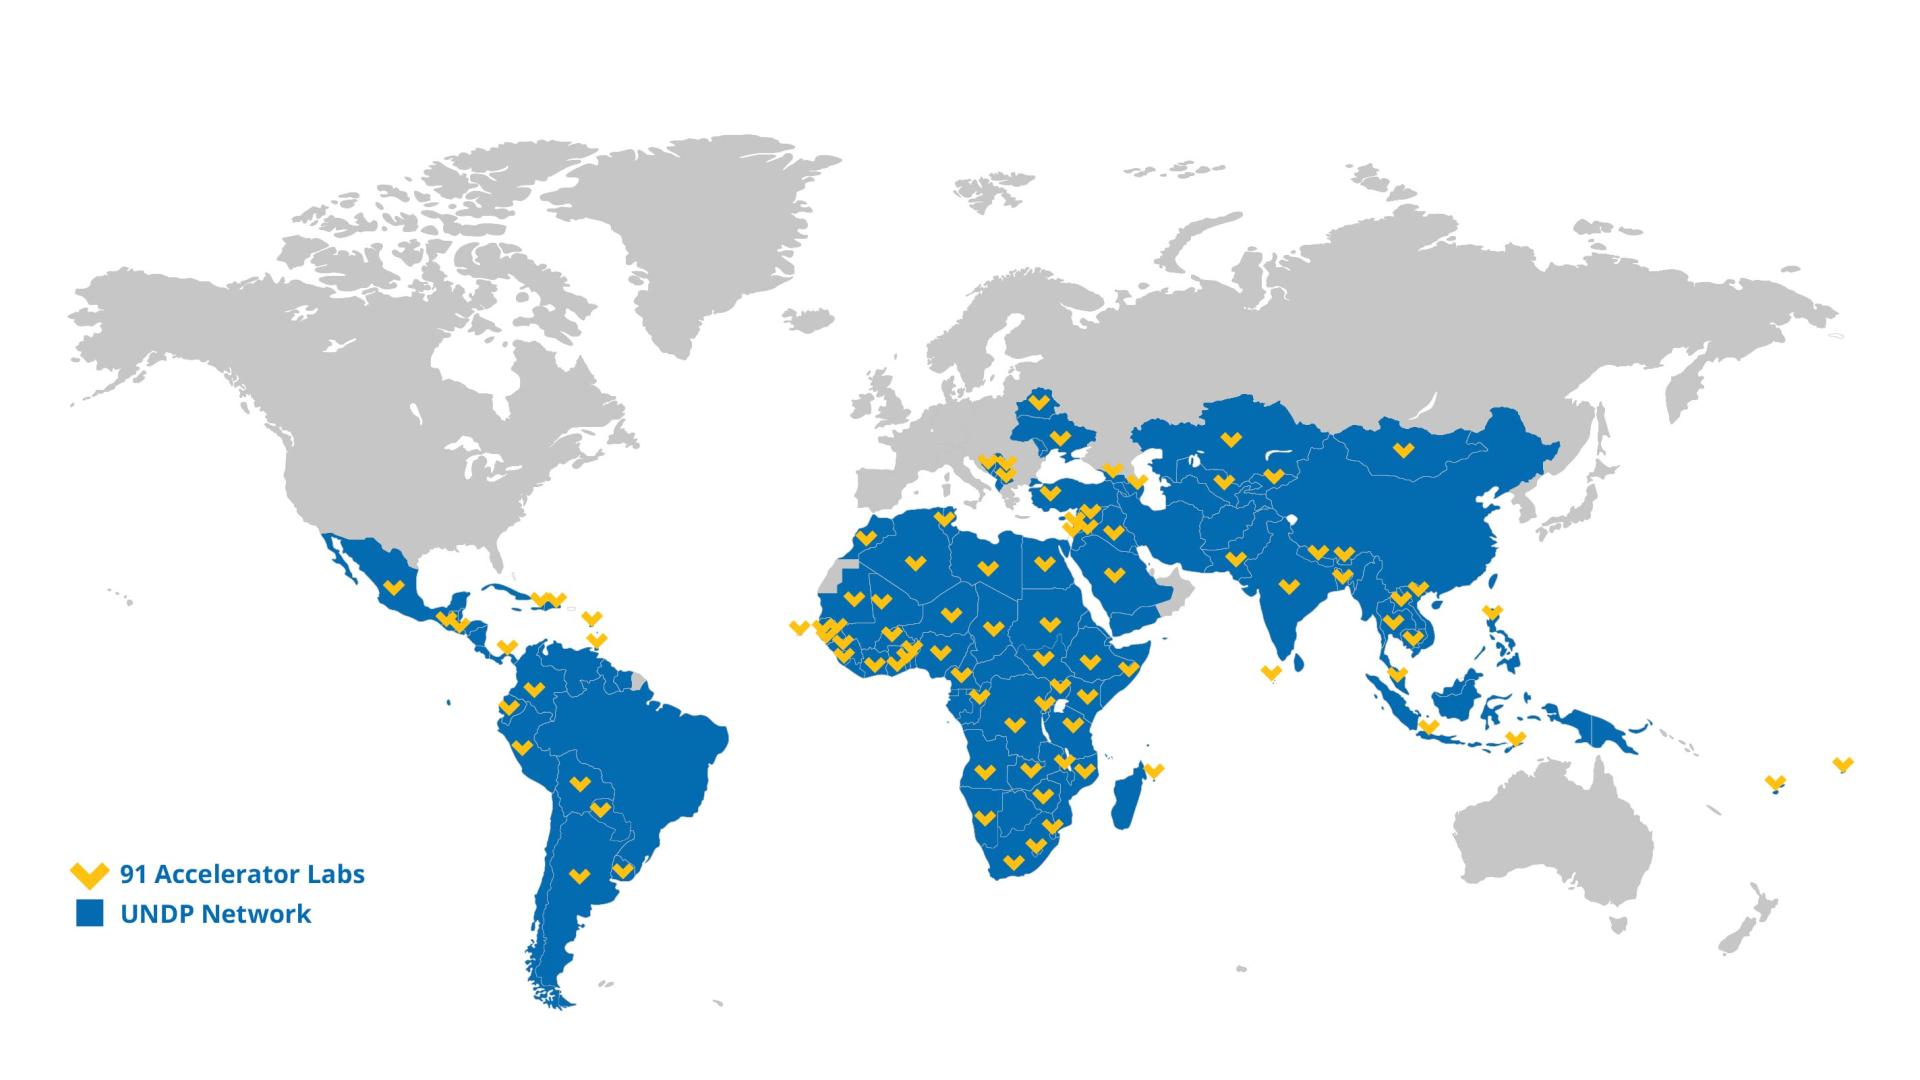 Das Netzwerk der UNDP Accelerator Labs ist an 91 Standorten aktive und unterstützt 115 Länder